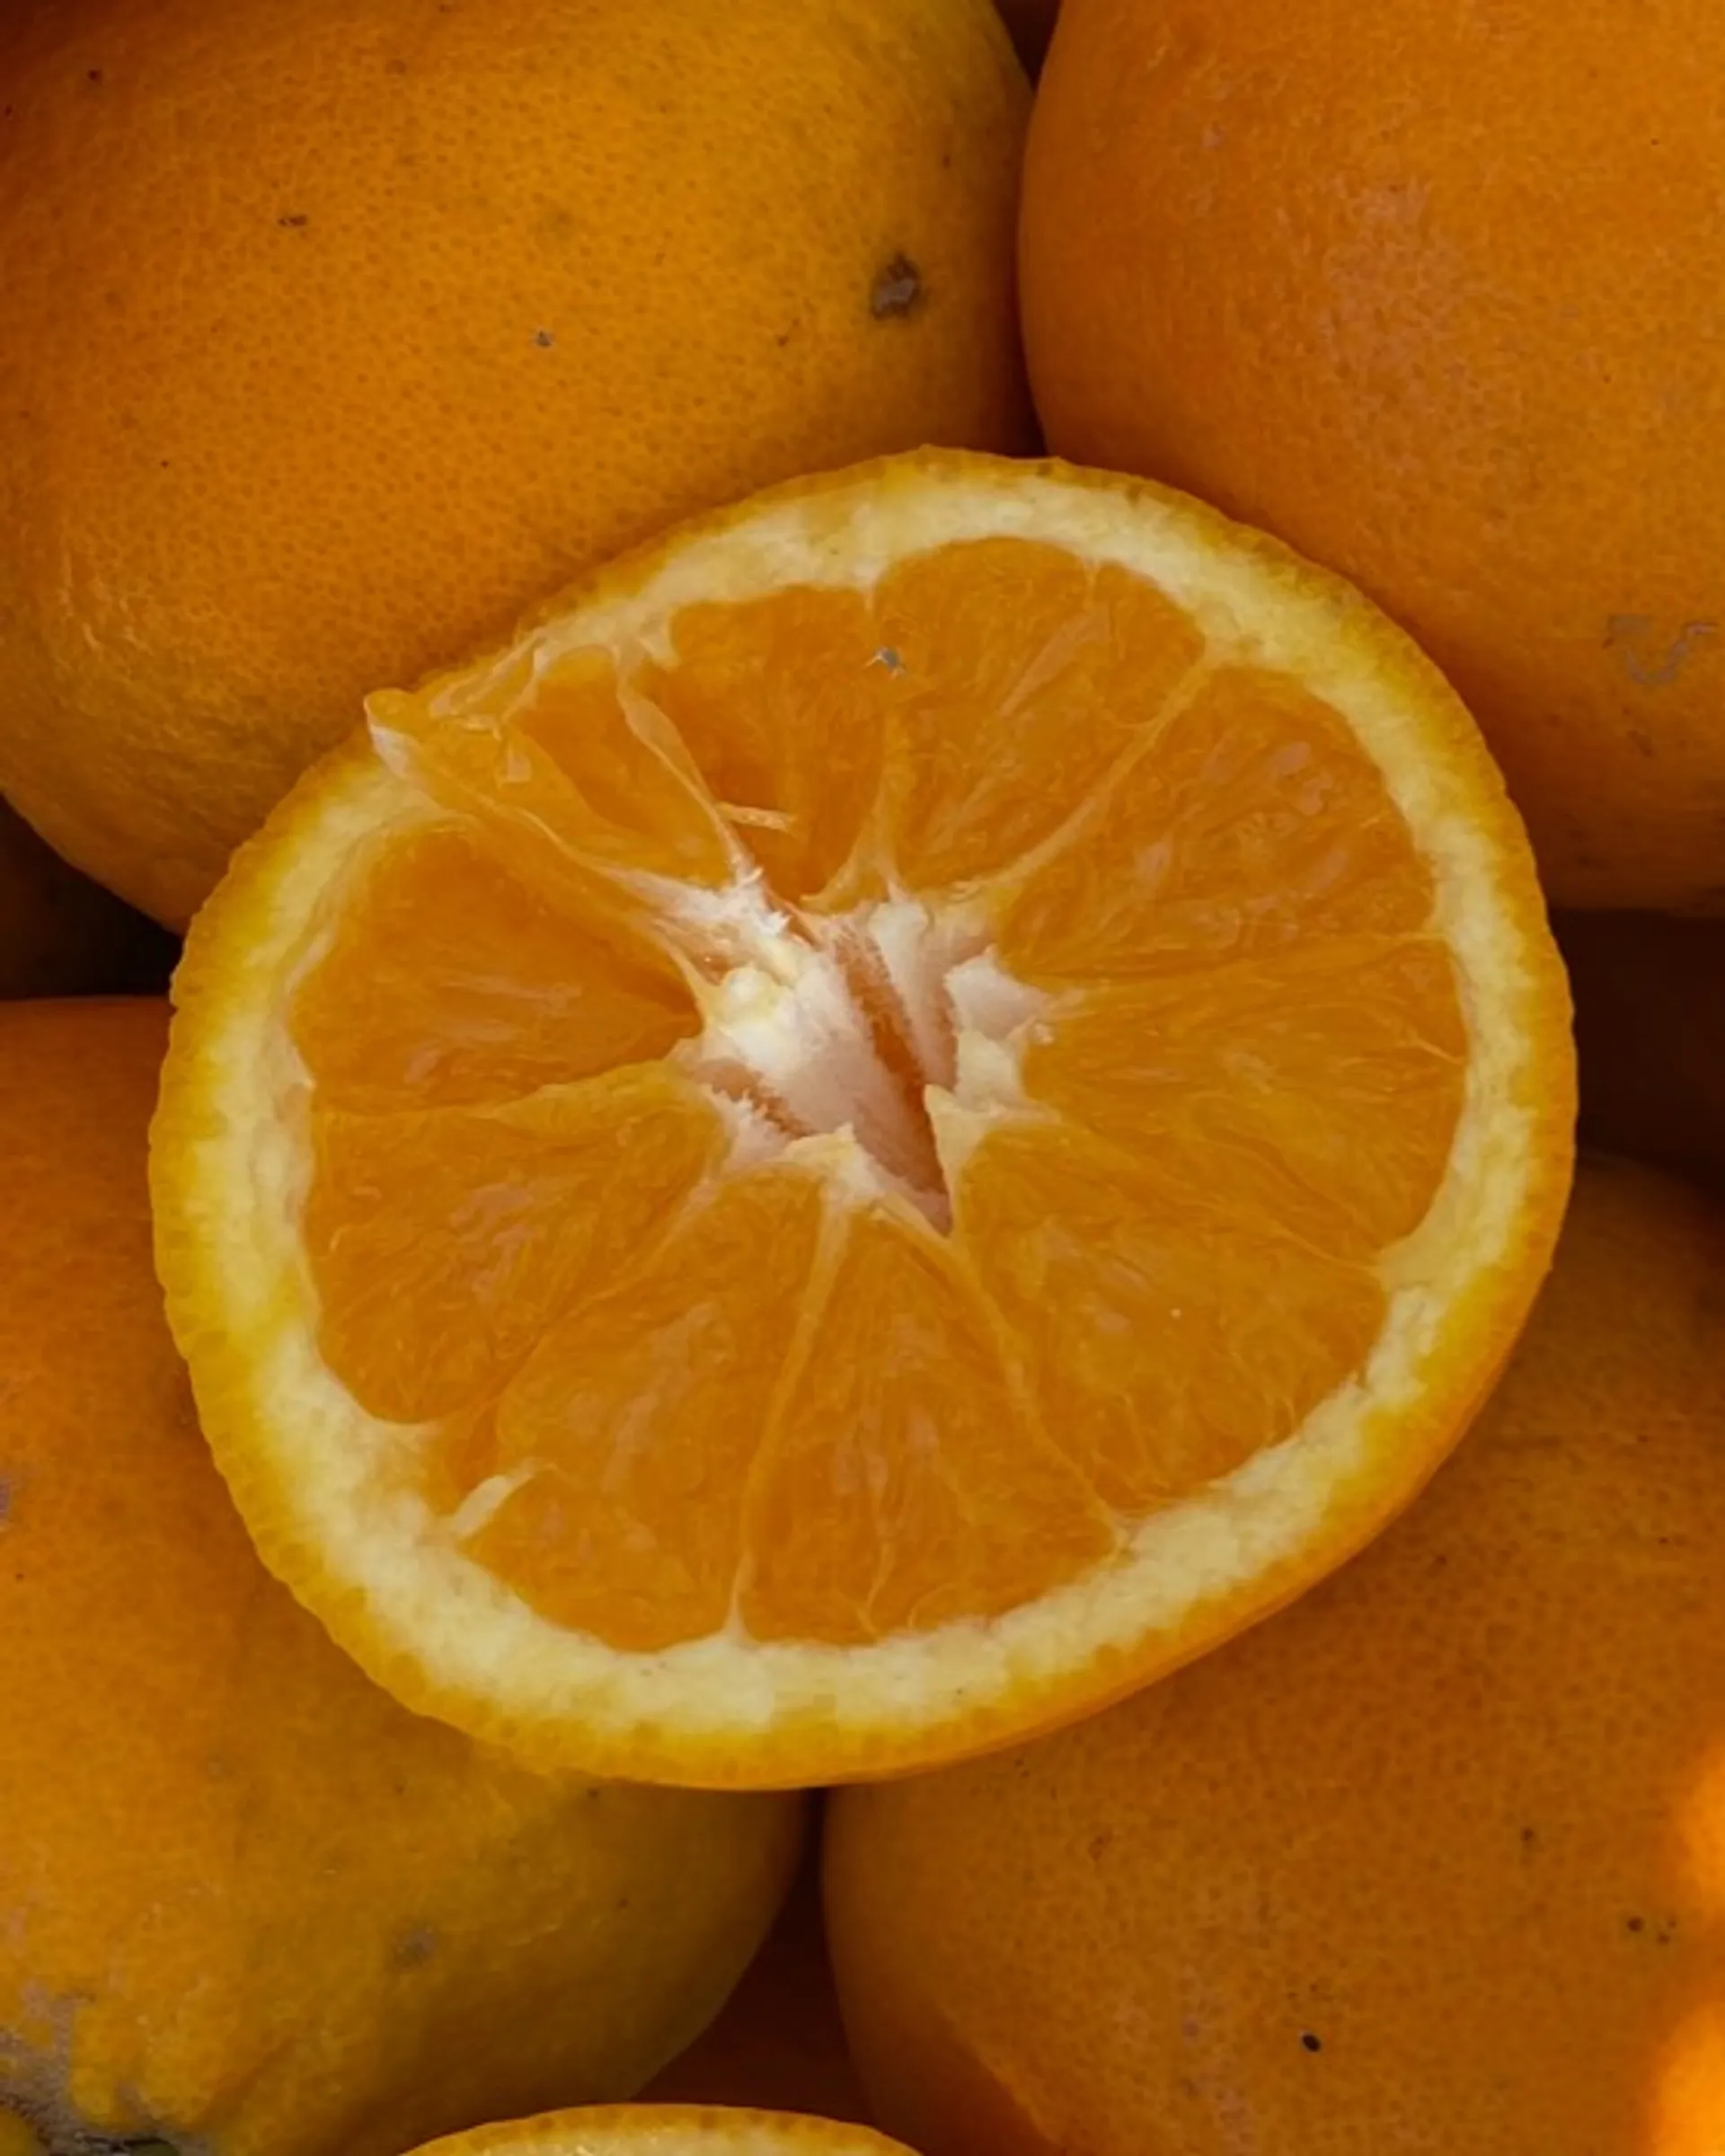 Bio-Orangen von Bio Agrumi Monasteri, Italien  CrowdFarming: Saisonales  Obst und Gemüse liefern lassen